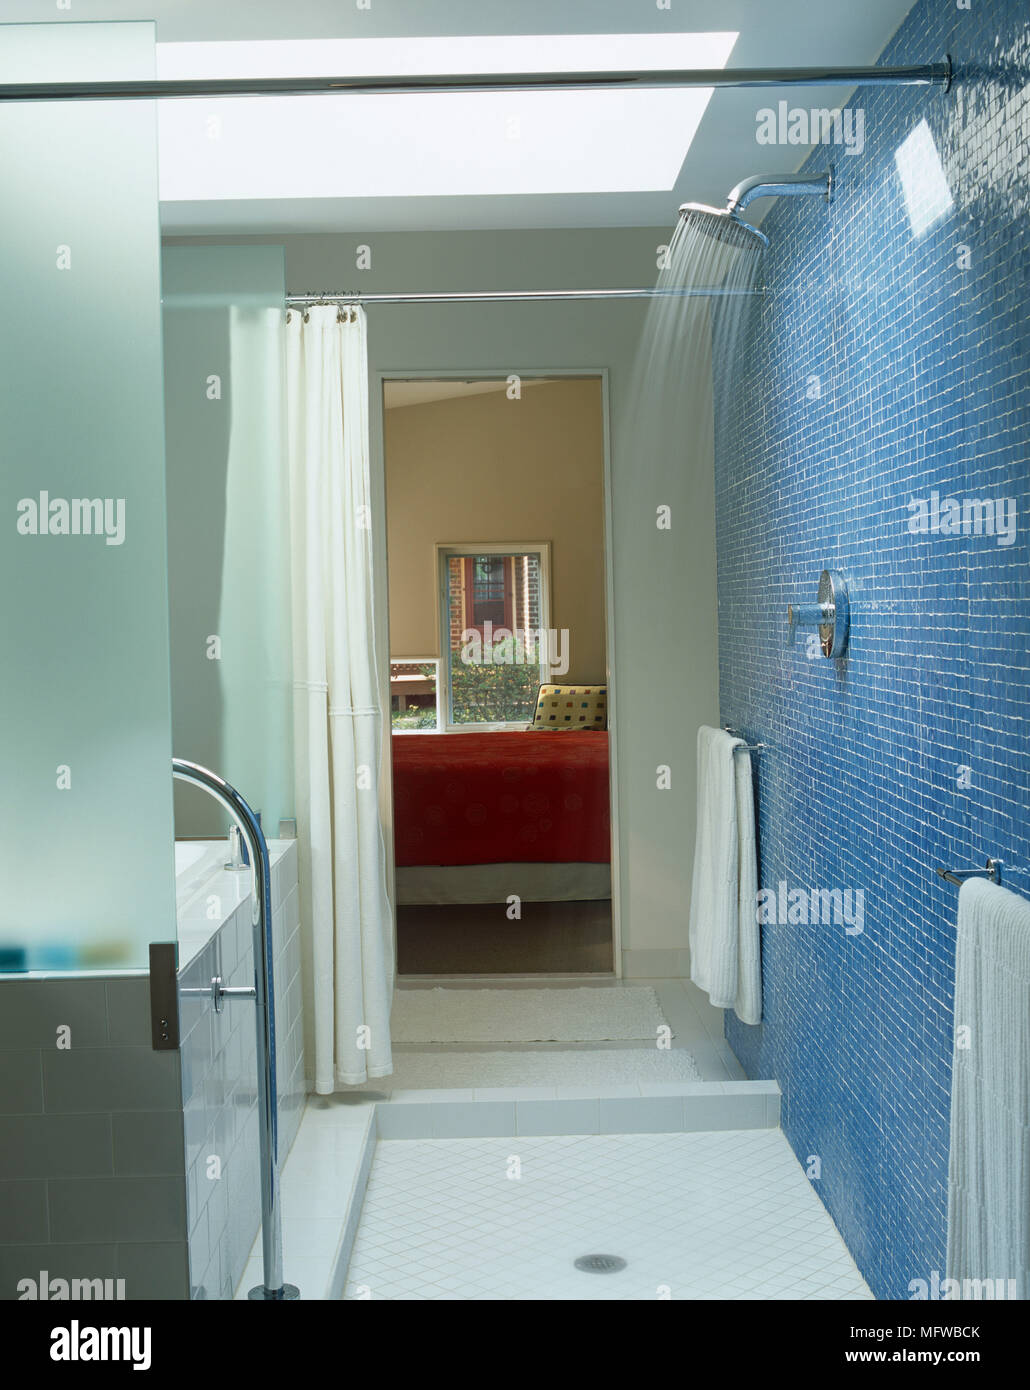 Dusche mit fließendem Wasser in blau gefliesten Badezimmer Stockfotografie  - Alamy